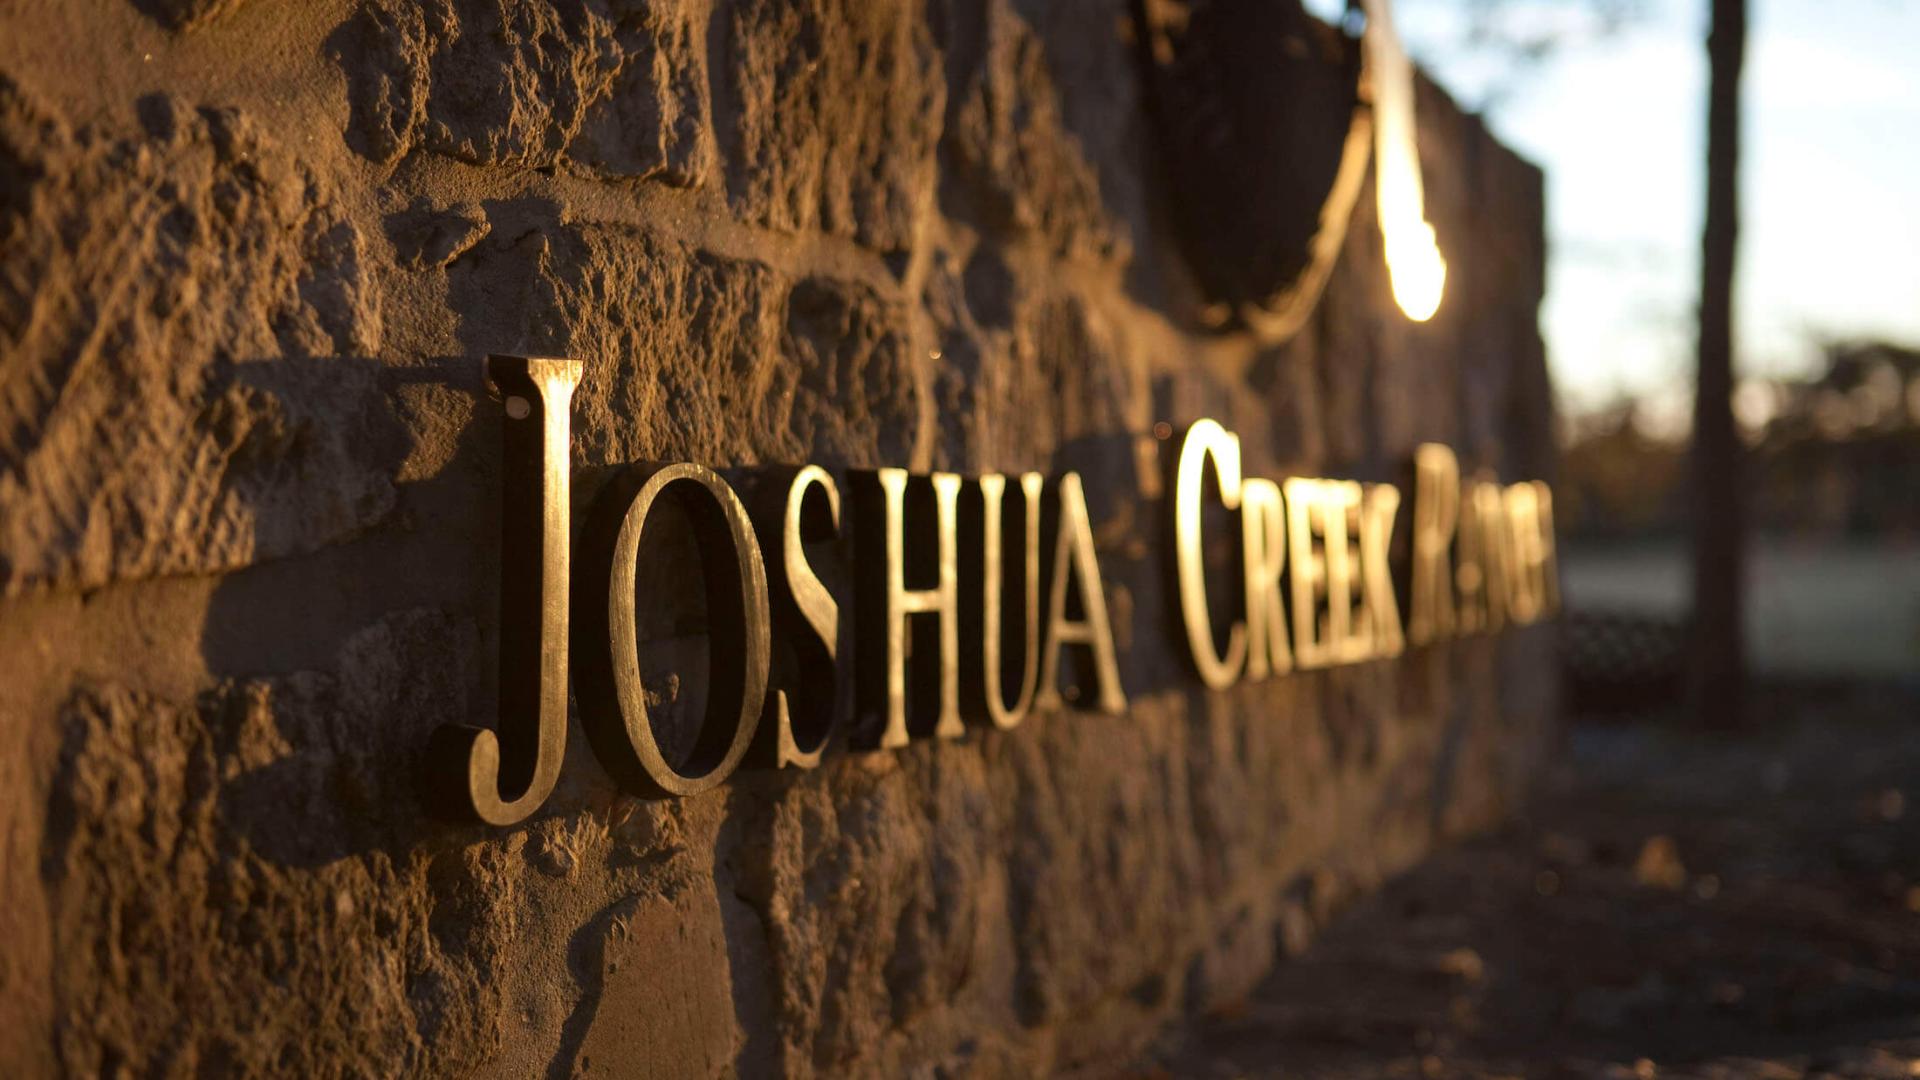 Contact Joshua Creek Ranch